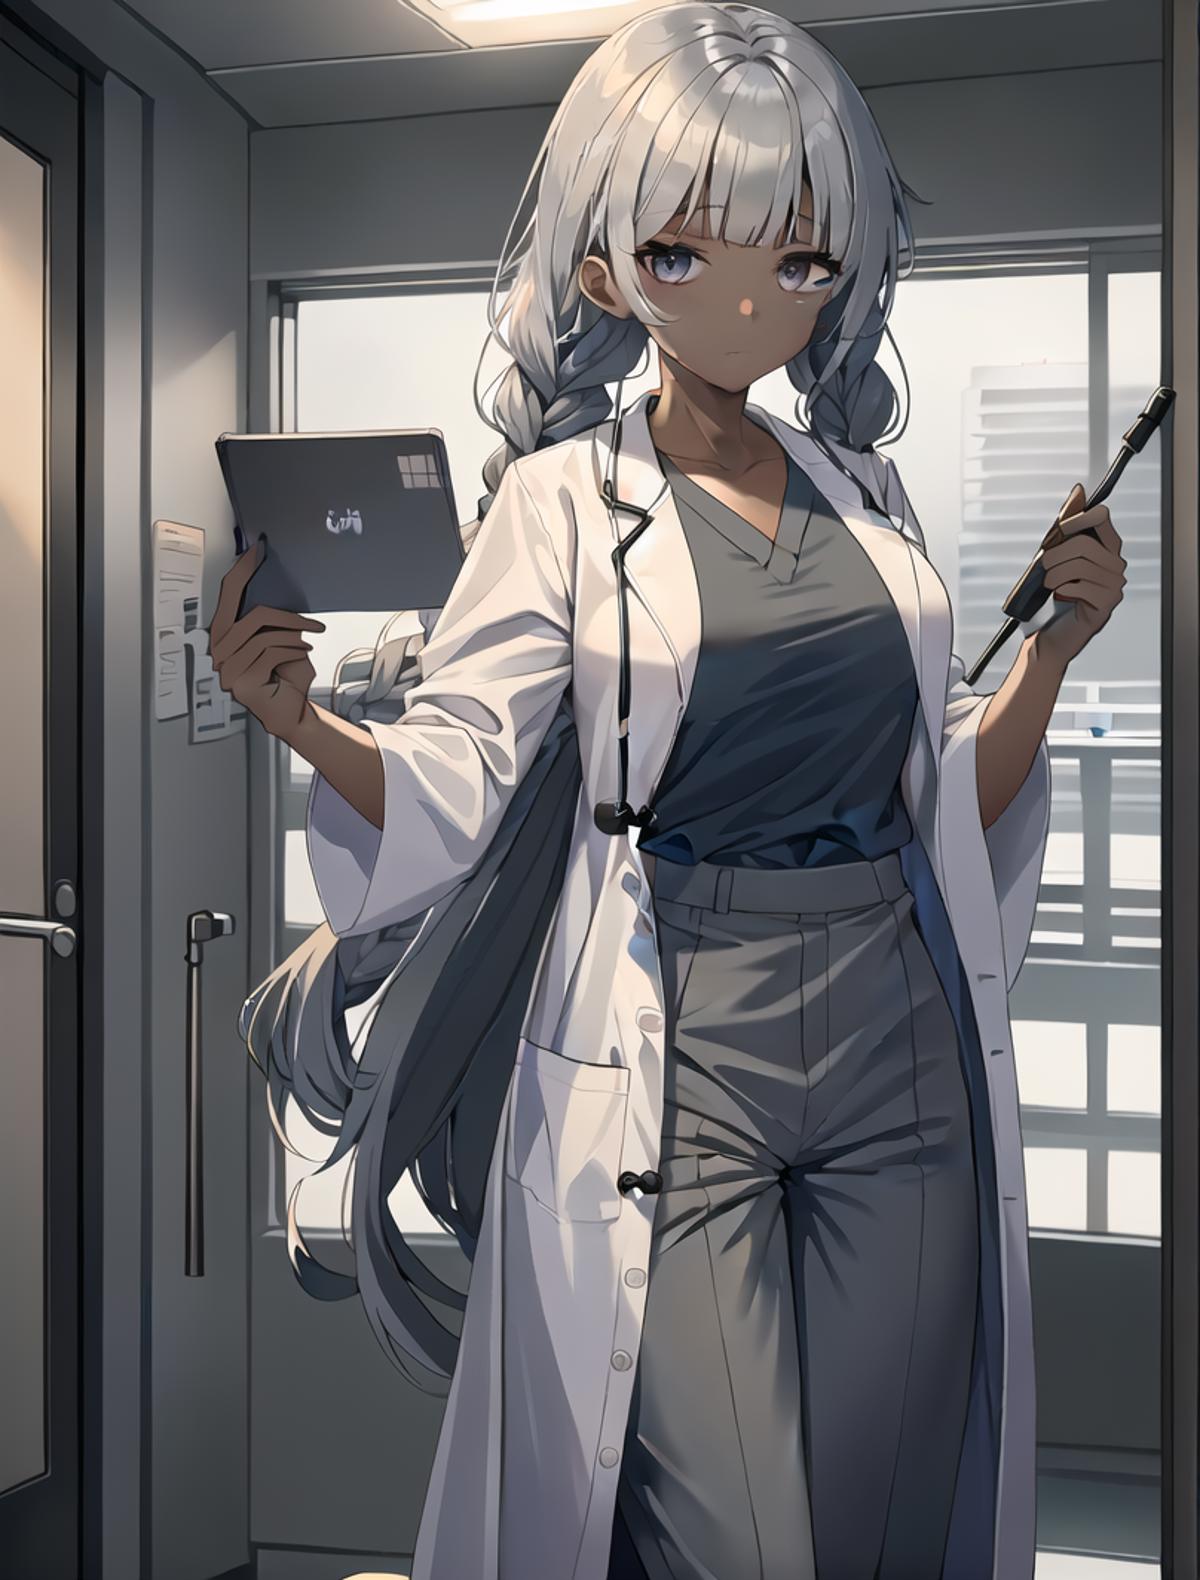 Doctor uniform image by Klaviana